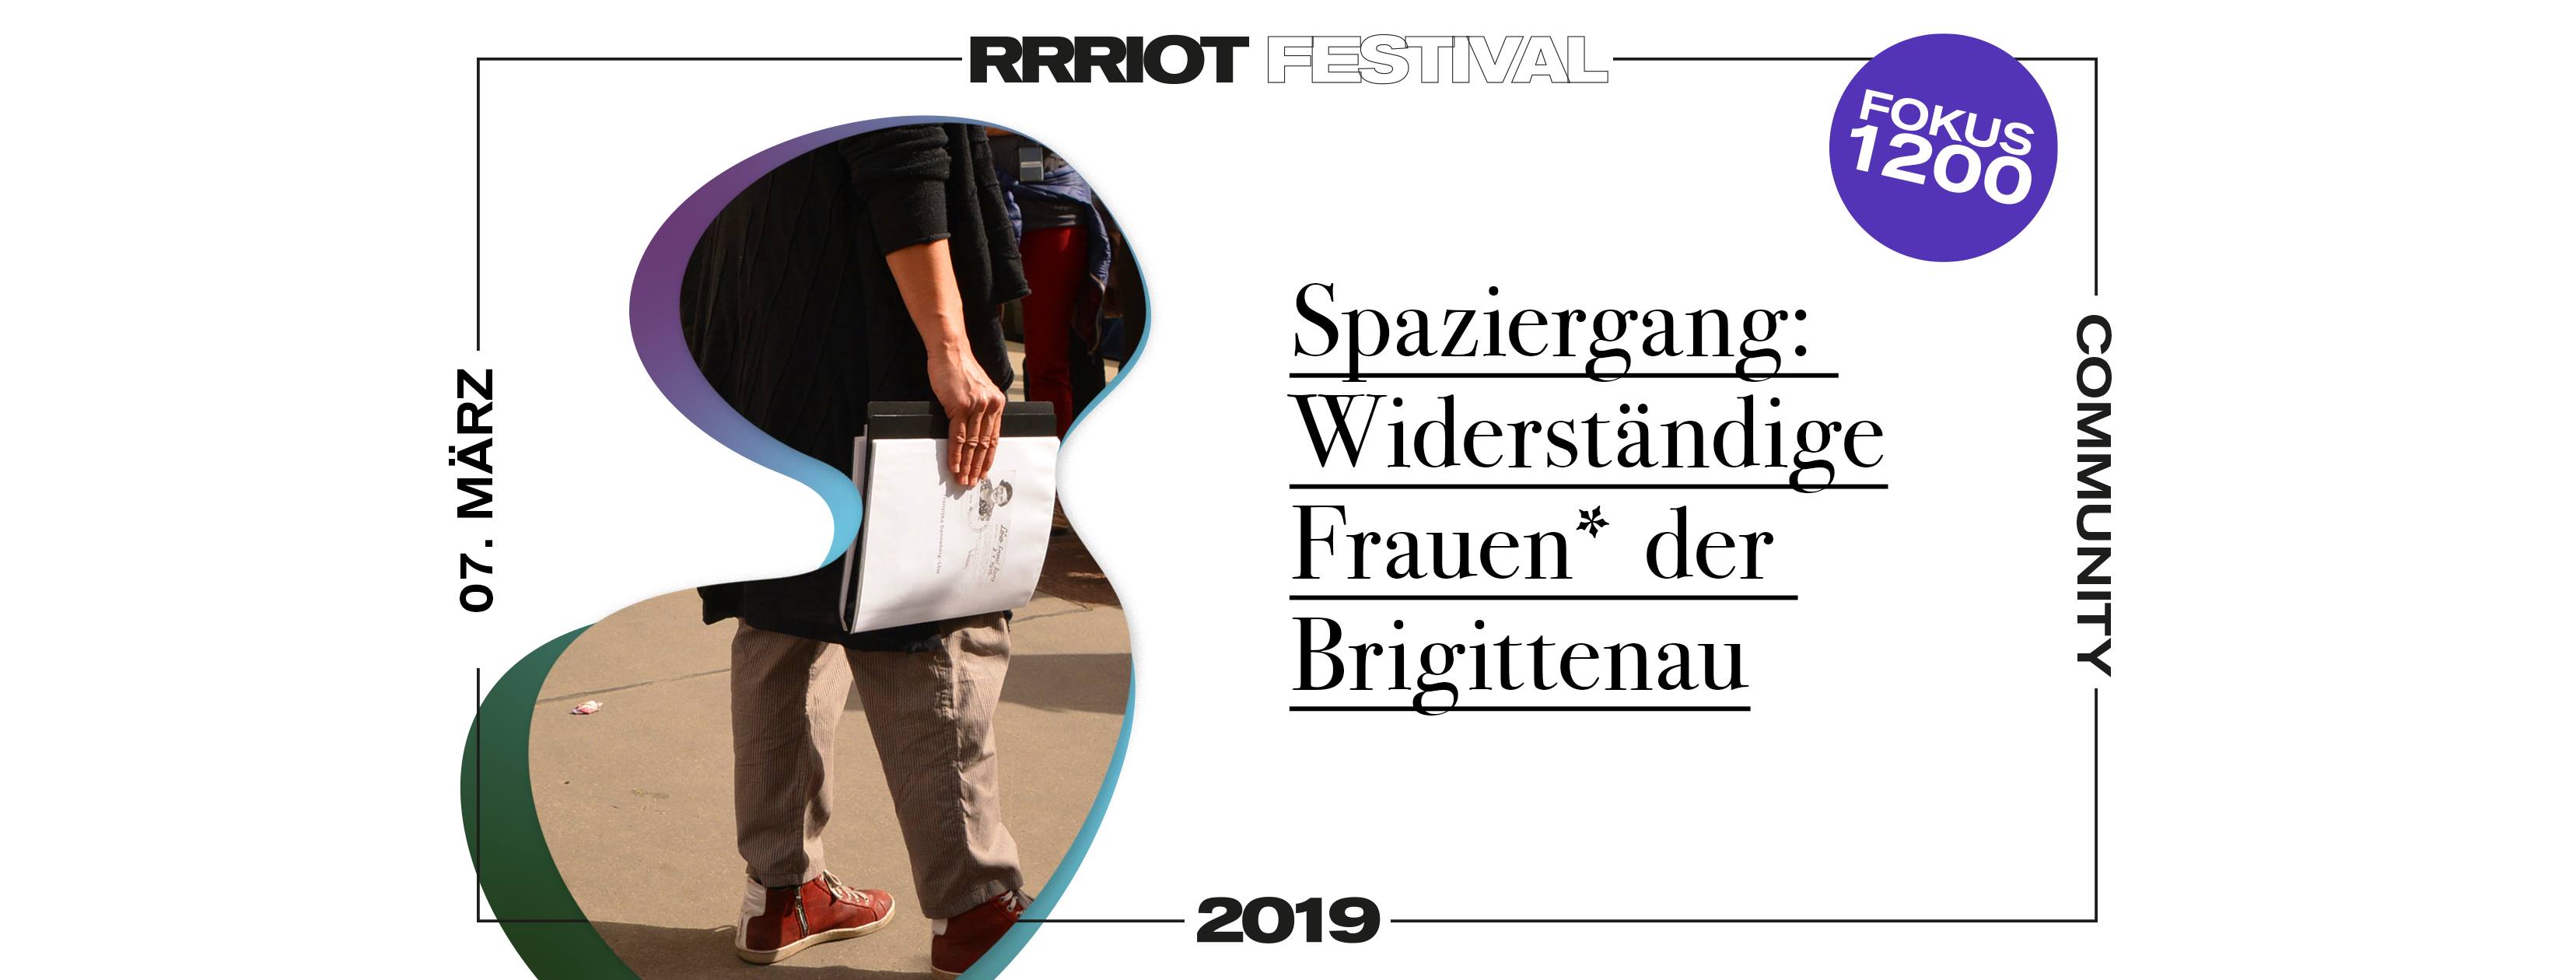 Rrriot Festival 2019 | Spaziergang: Widerständige Frauen in der Brigittenau